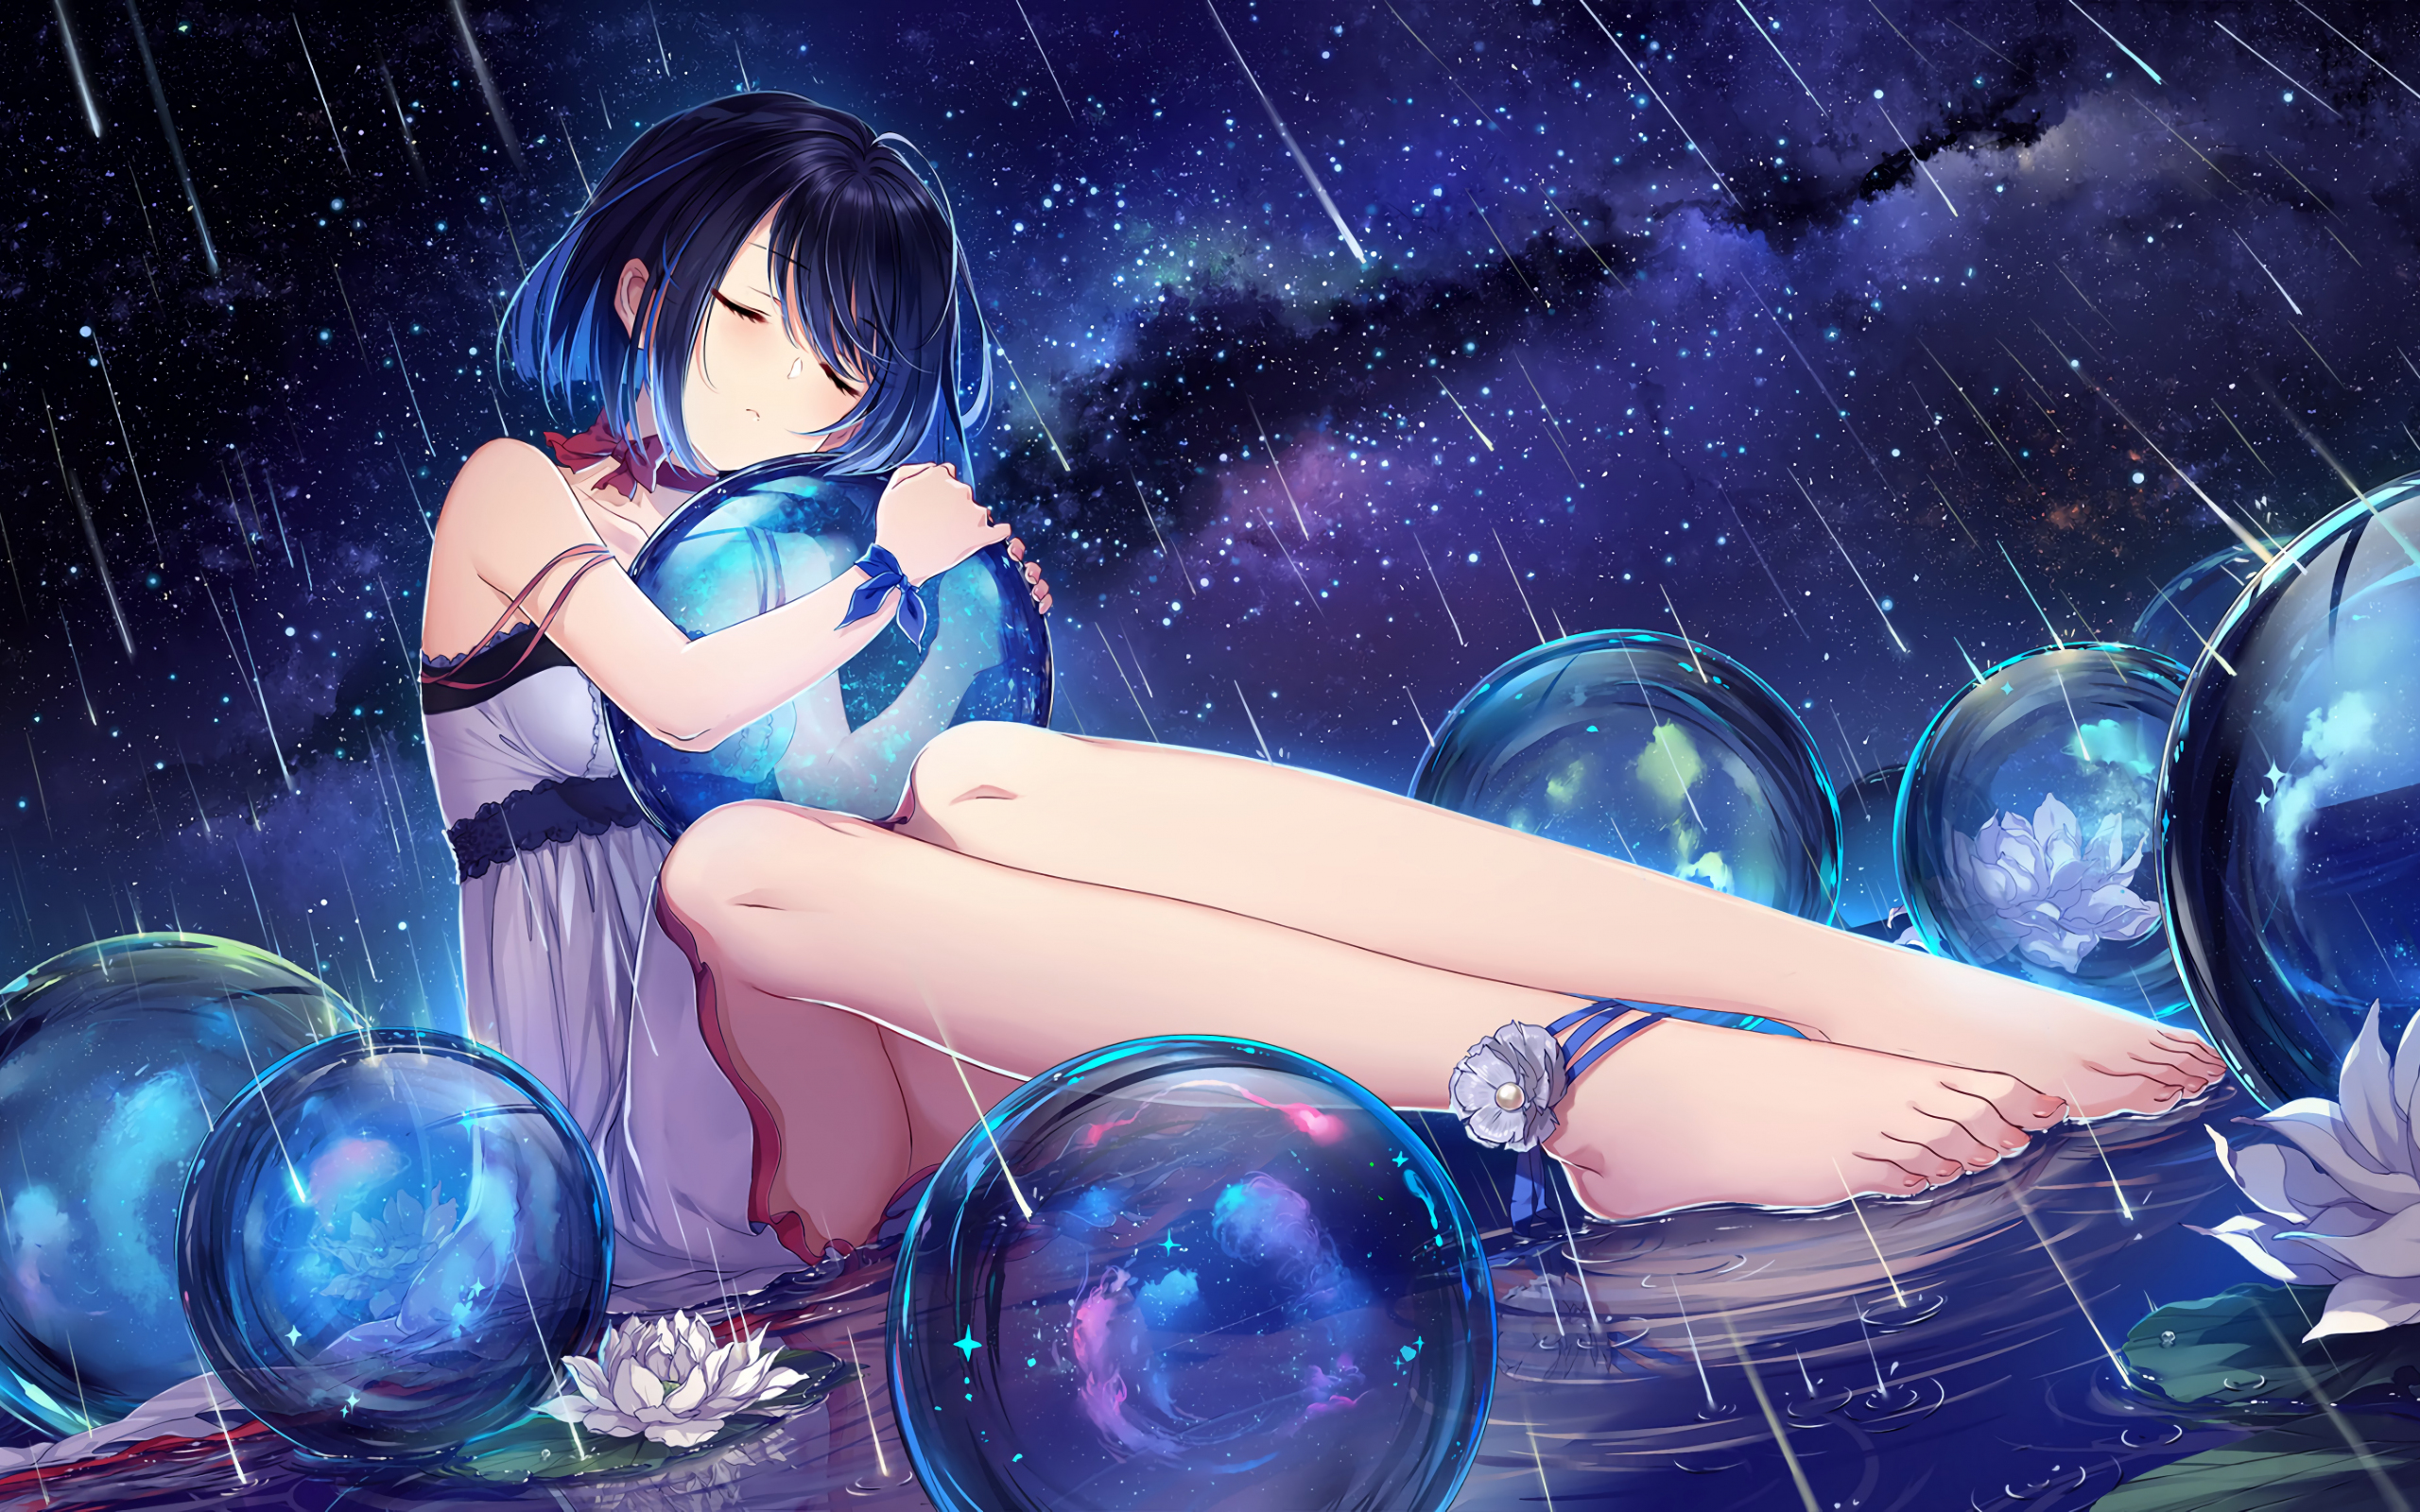 Desktop Wallpaper Rain Anime Girl Balls Night Hd Image Picture Background Zsznkv